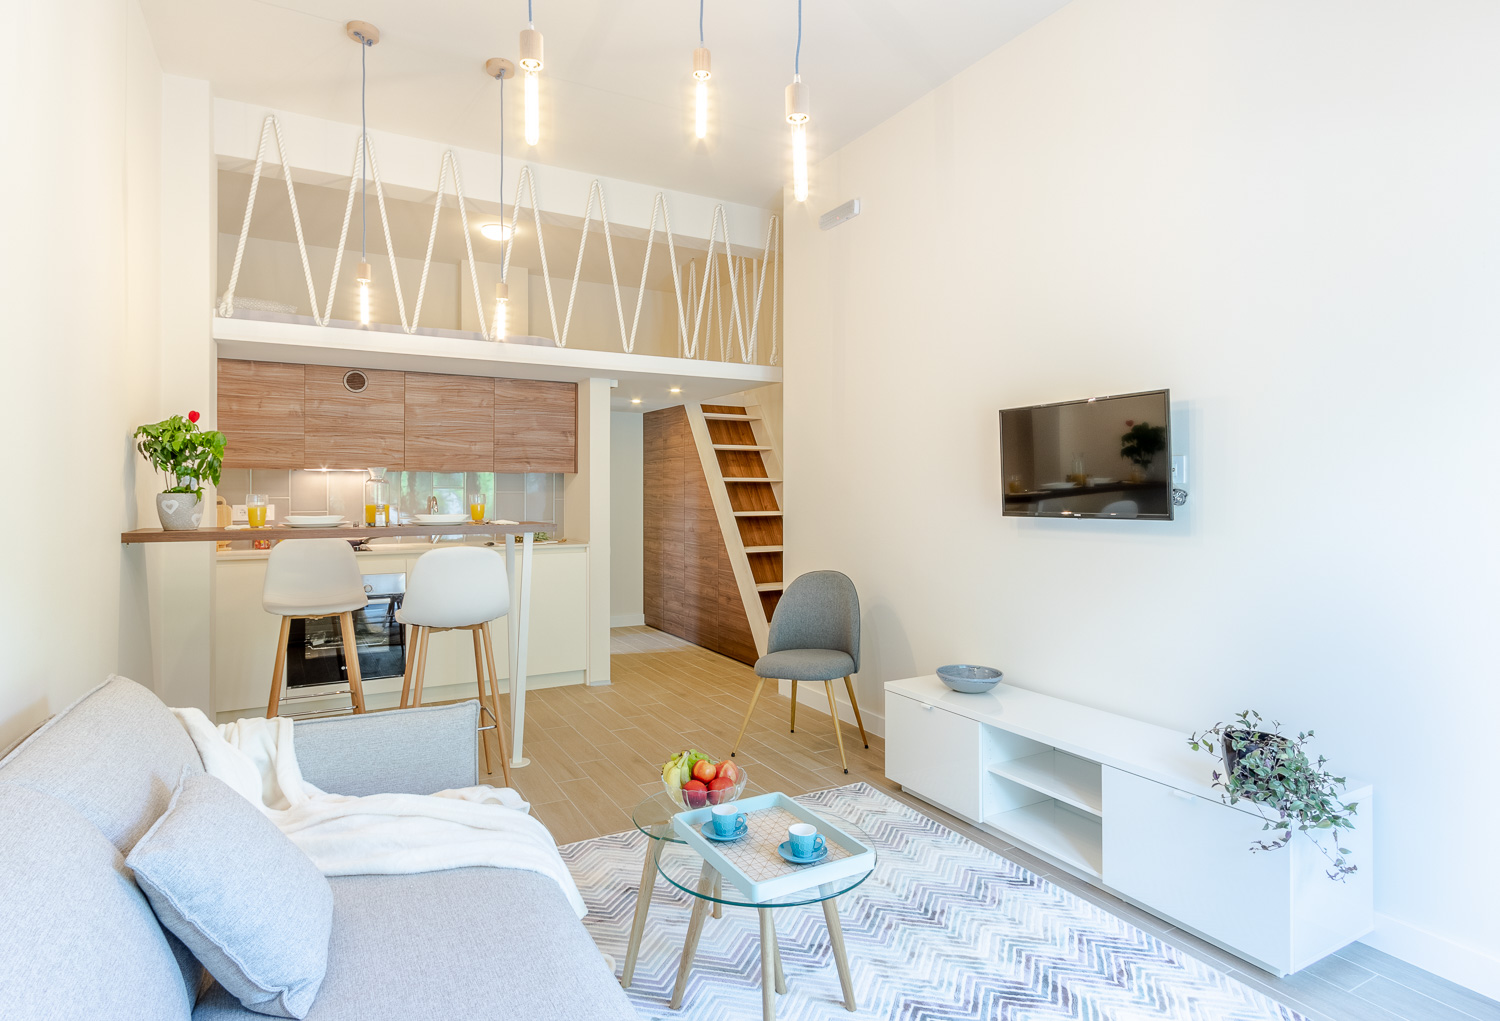 Mini Condos Studio Kitchen living area and mezzanine